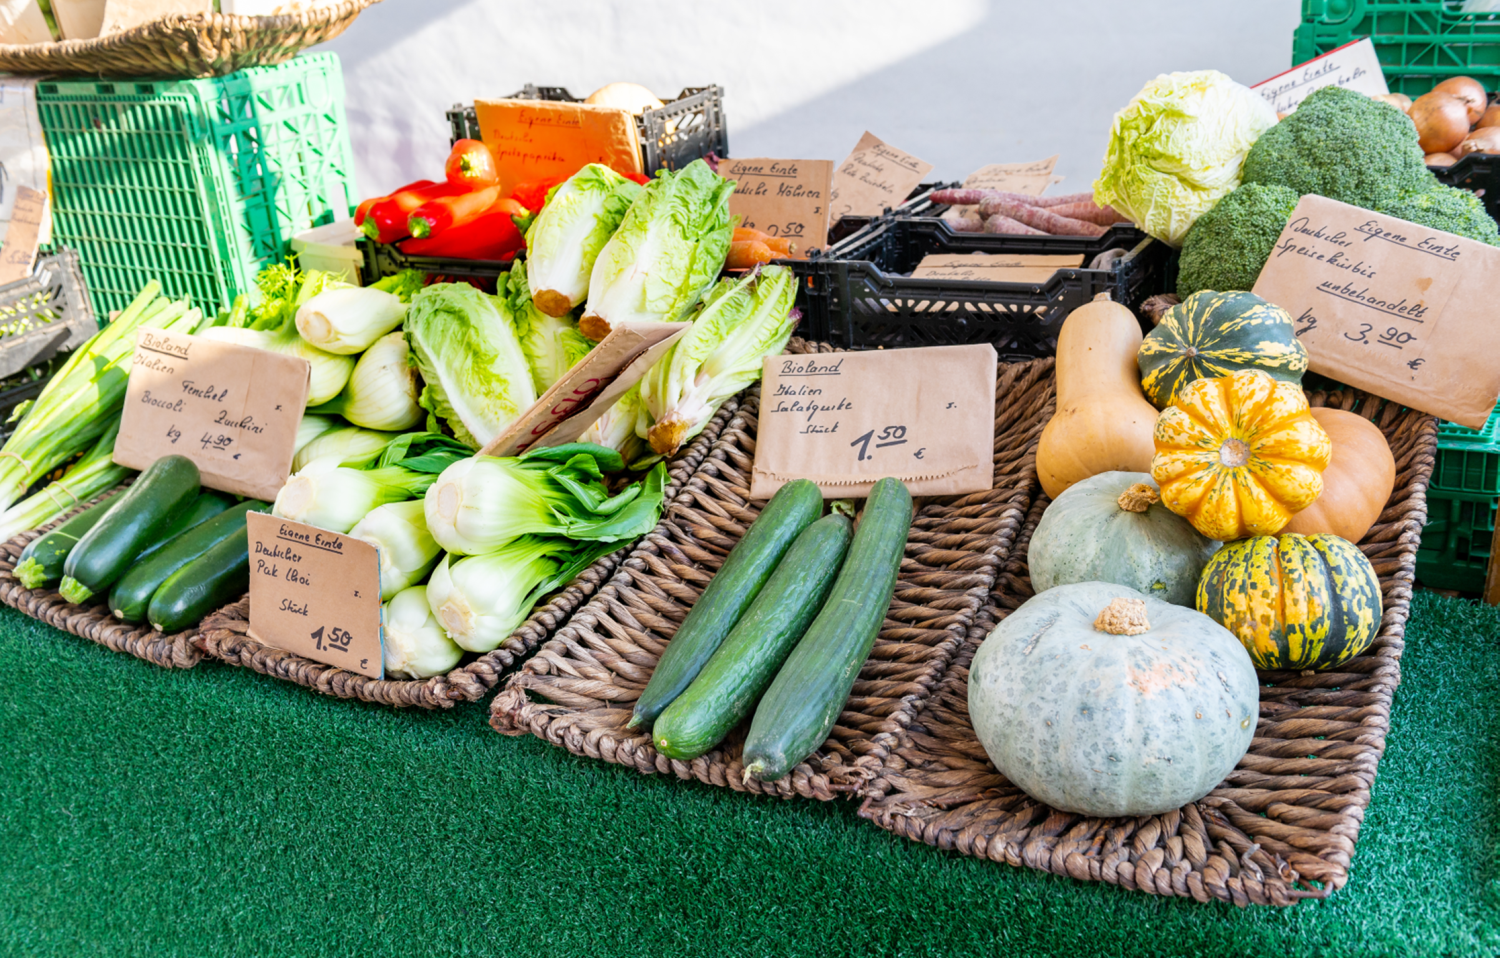 Gemüse wird zum Verkauf an einem Marktstand angeboten.